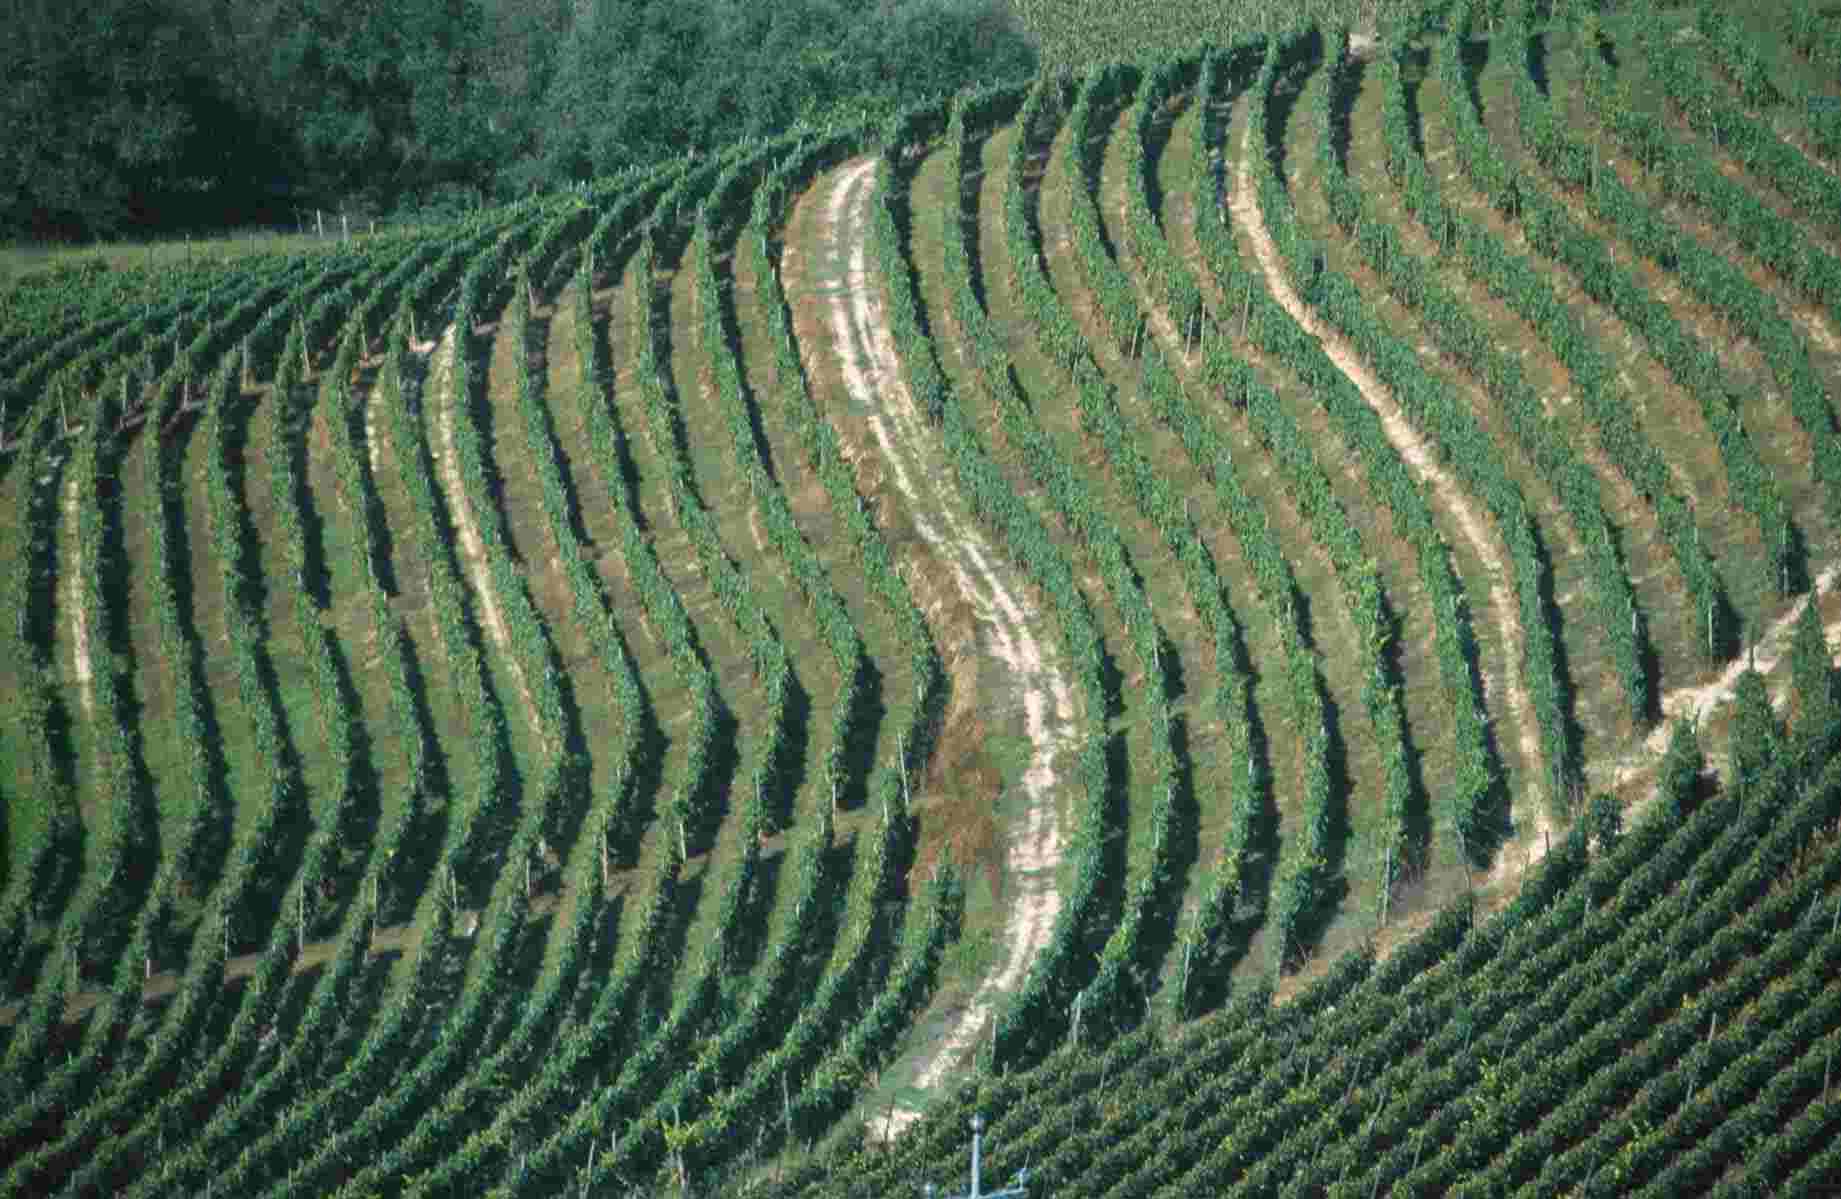 Vigneti a girappoggio. Straordinari disegni del paesaggio agrario dell'Astigiano, frutto delle secolari sistemazioni idraulico-agrarie dei versanti collinari.